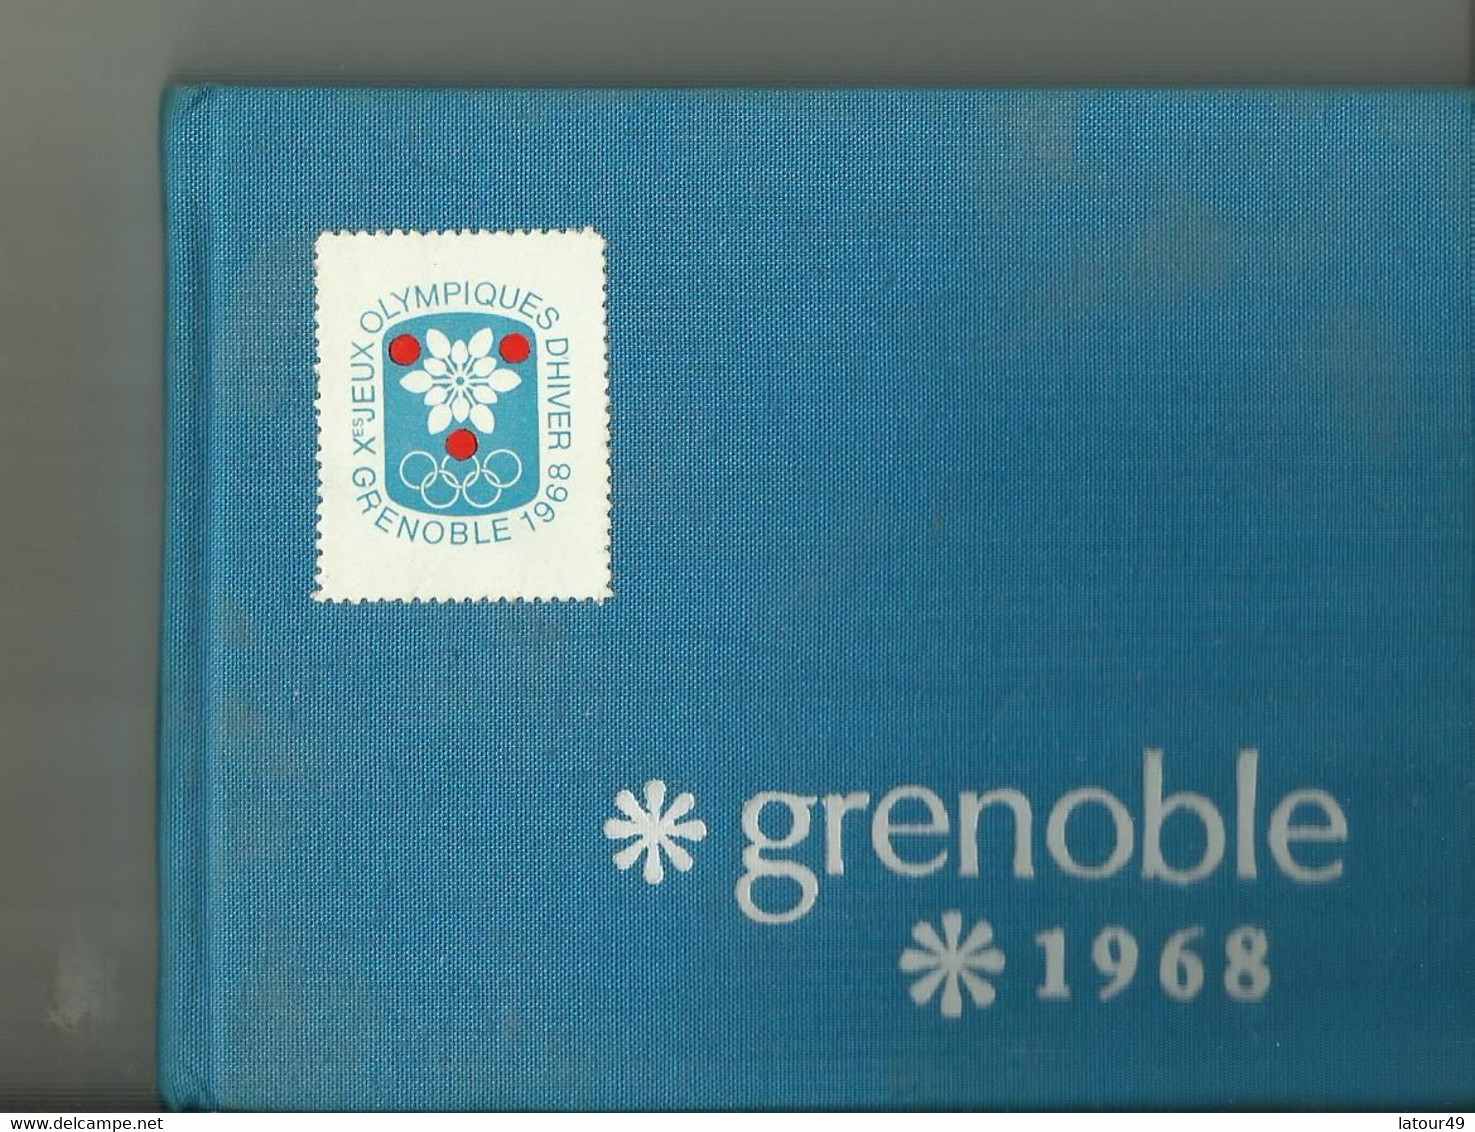 Jeux Olympique Grenoble1968  Autographes Pologne.jozet Kocjan Crwin Fredor Etc. Norvege Bjorn Wirkola Porte Drapeau Etc - Autogramme